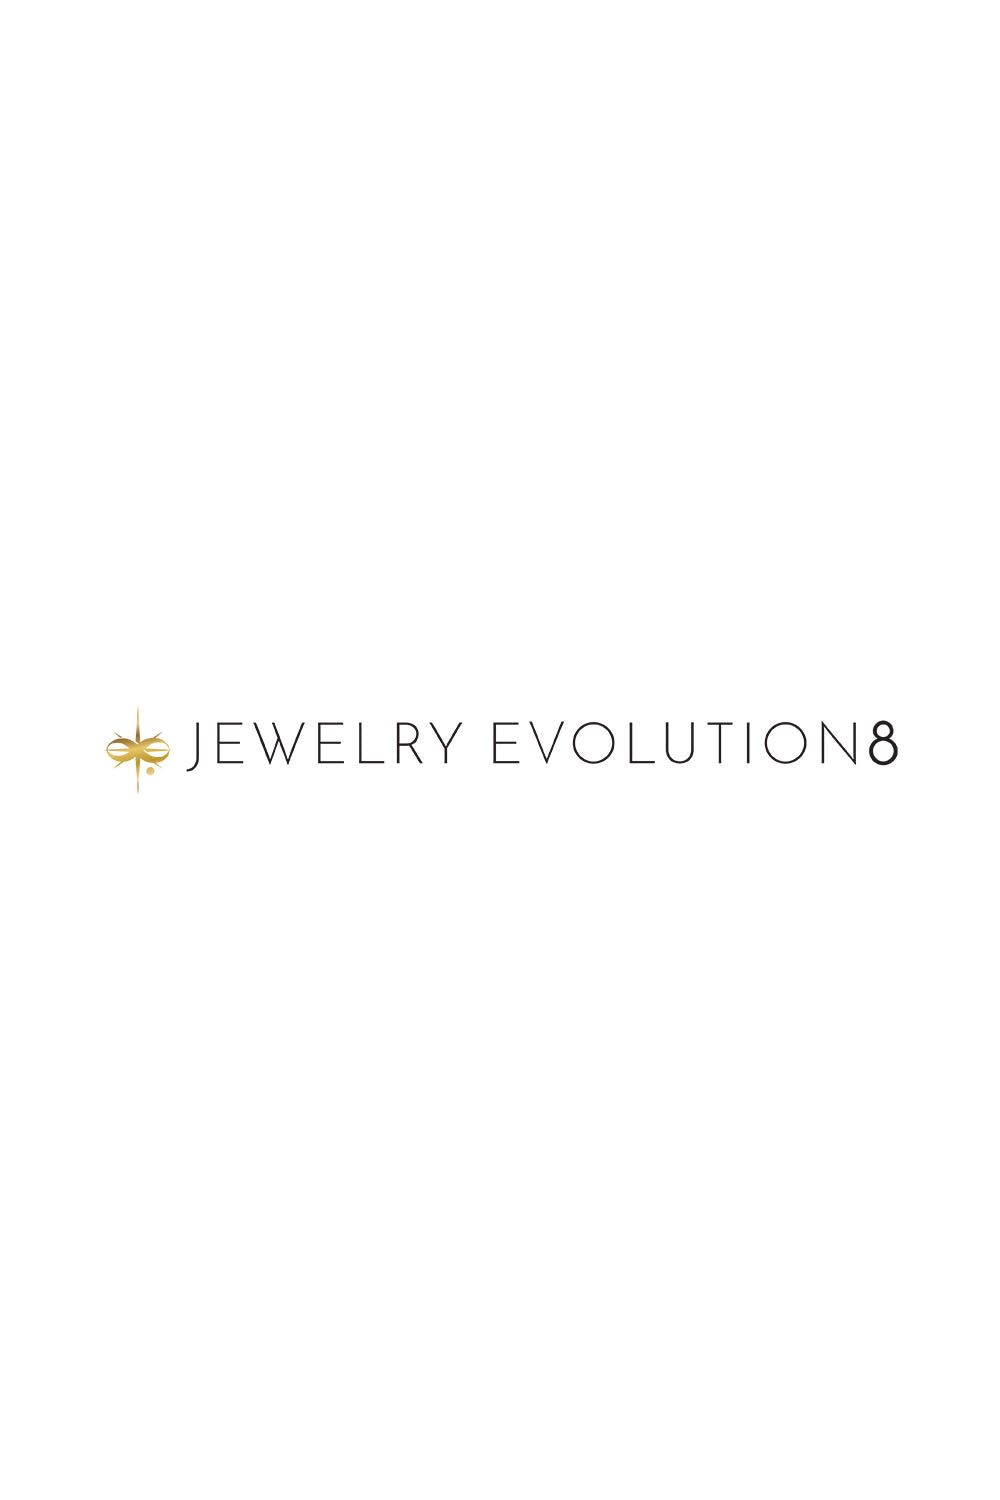 Jewelry Evolution8